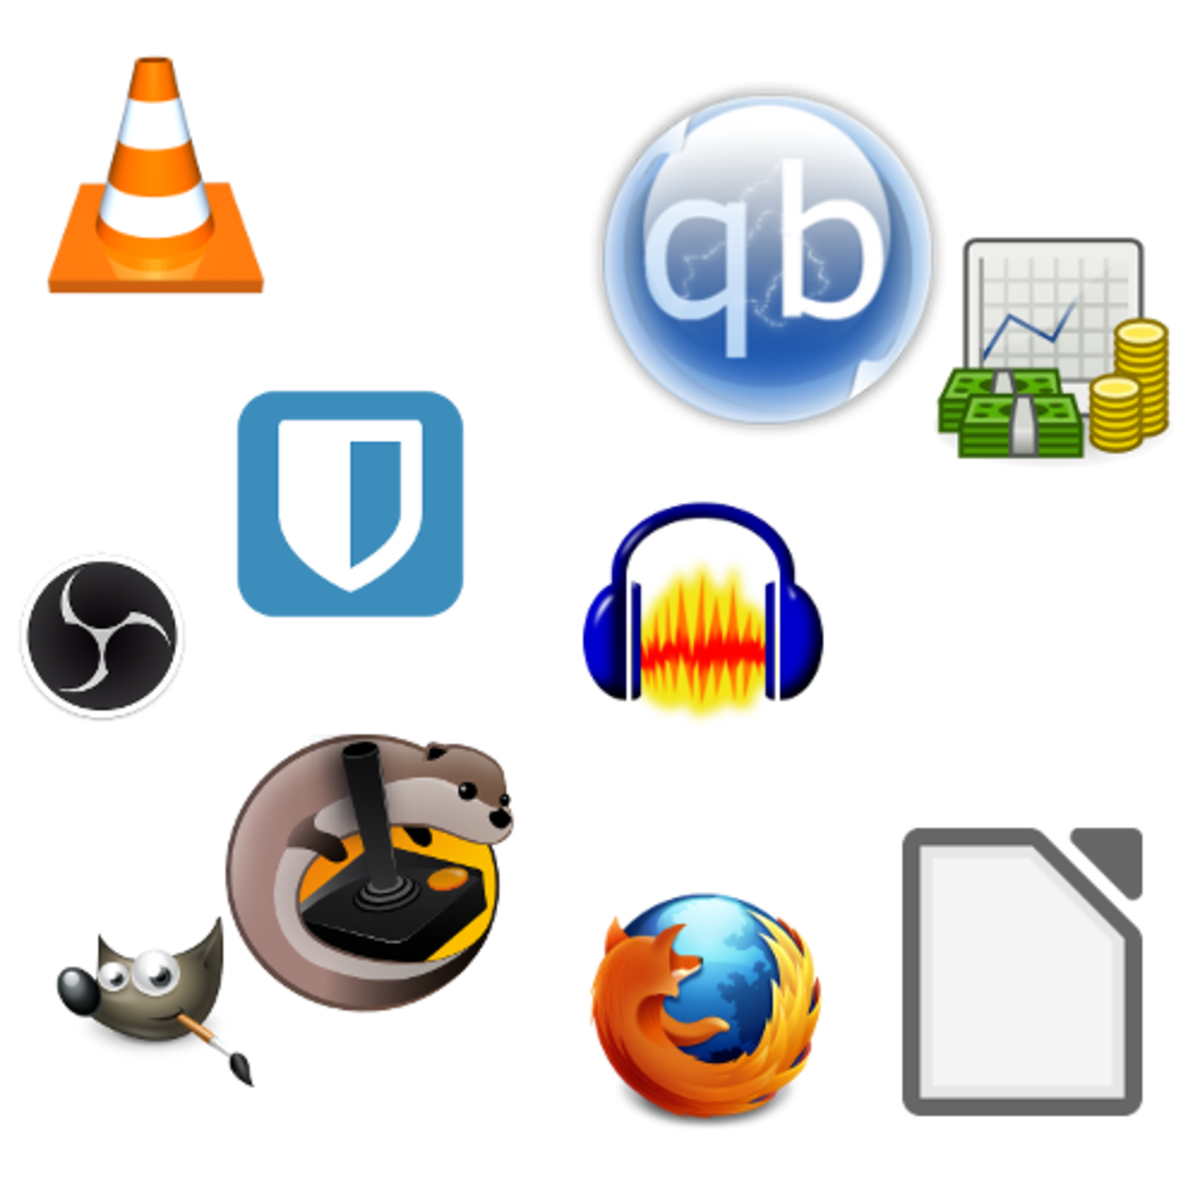 do i use windows or mac files for ubuntu